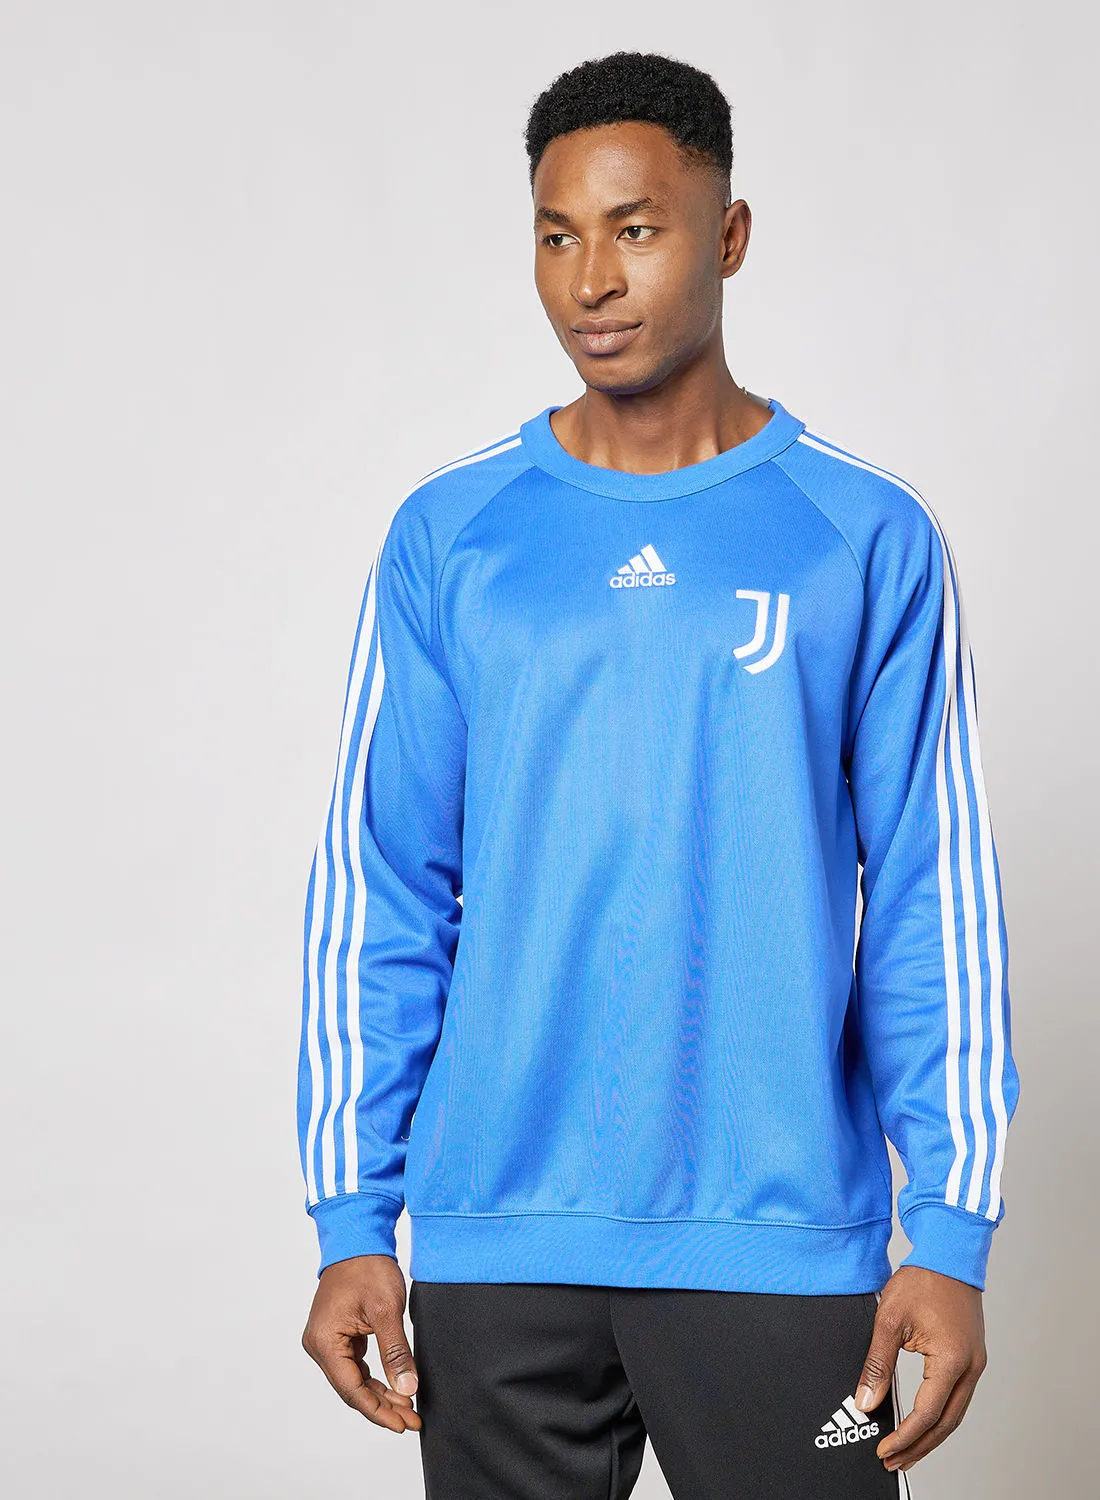 Adidas Juventus F.C. Teamgeist Football Sweatshirt